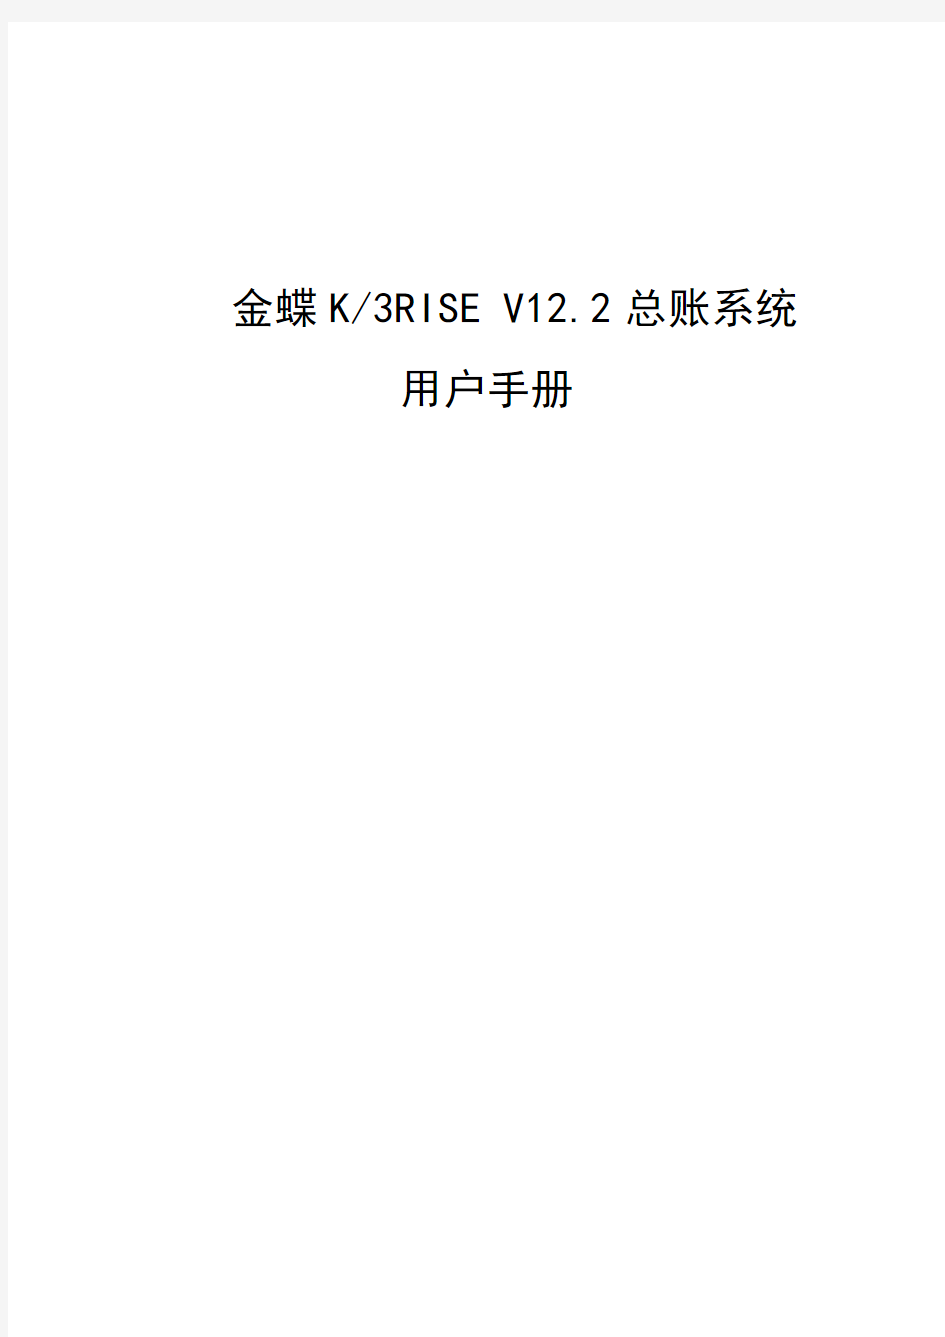 (WORD版)金蝶K3RISE专业版_V12.2_总账系统用户手册